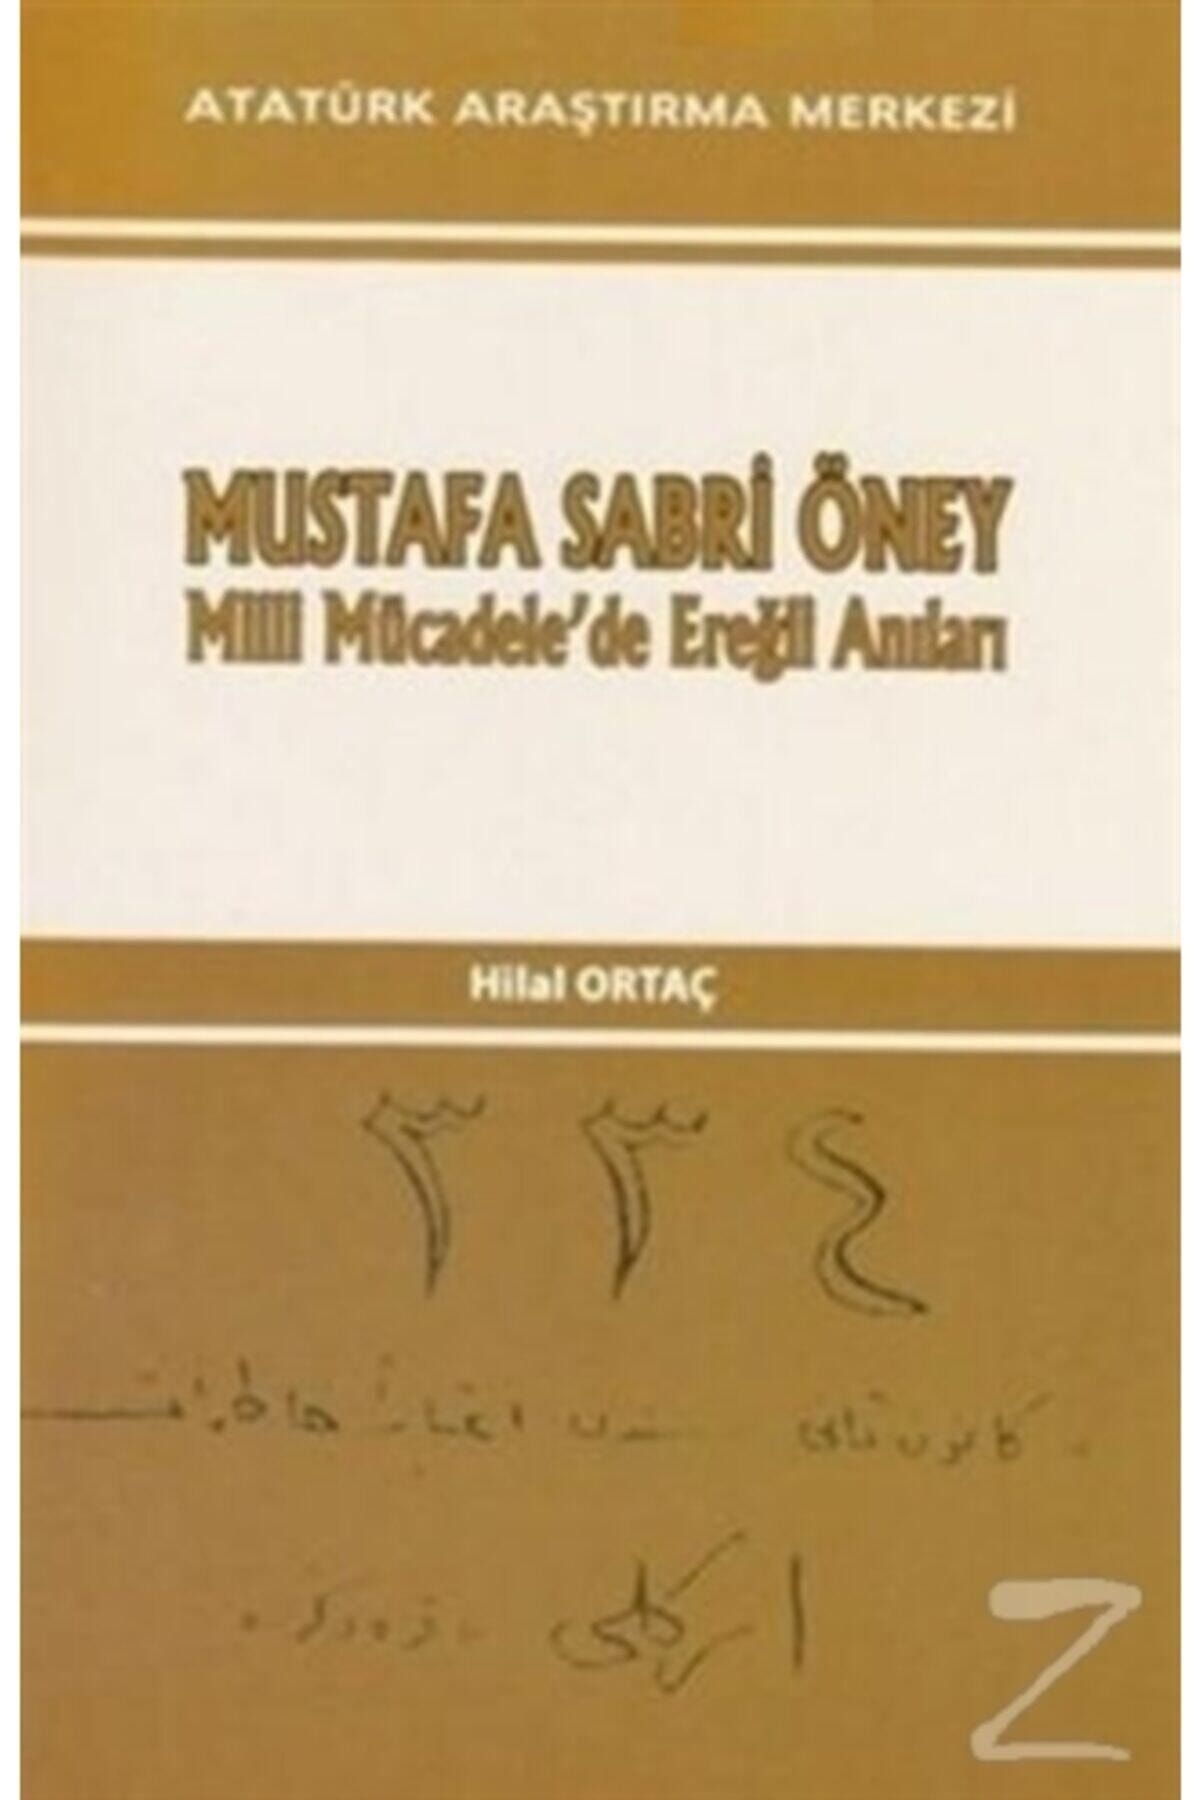 Atatürk Araştırma Merkezi Mustafa Sabri Öney Milli Mücadele'de Ereğli Anıları